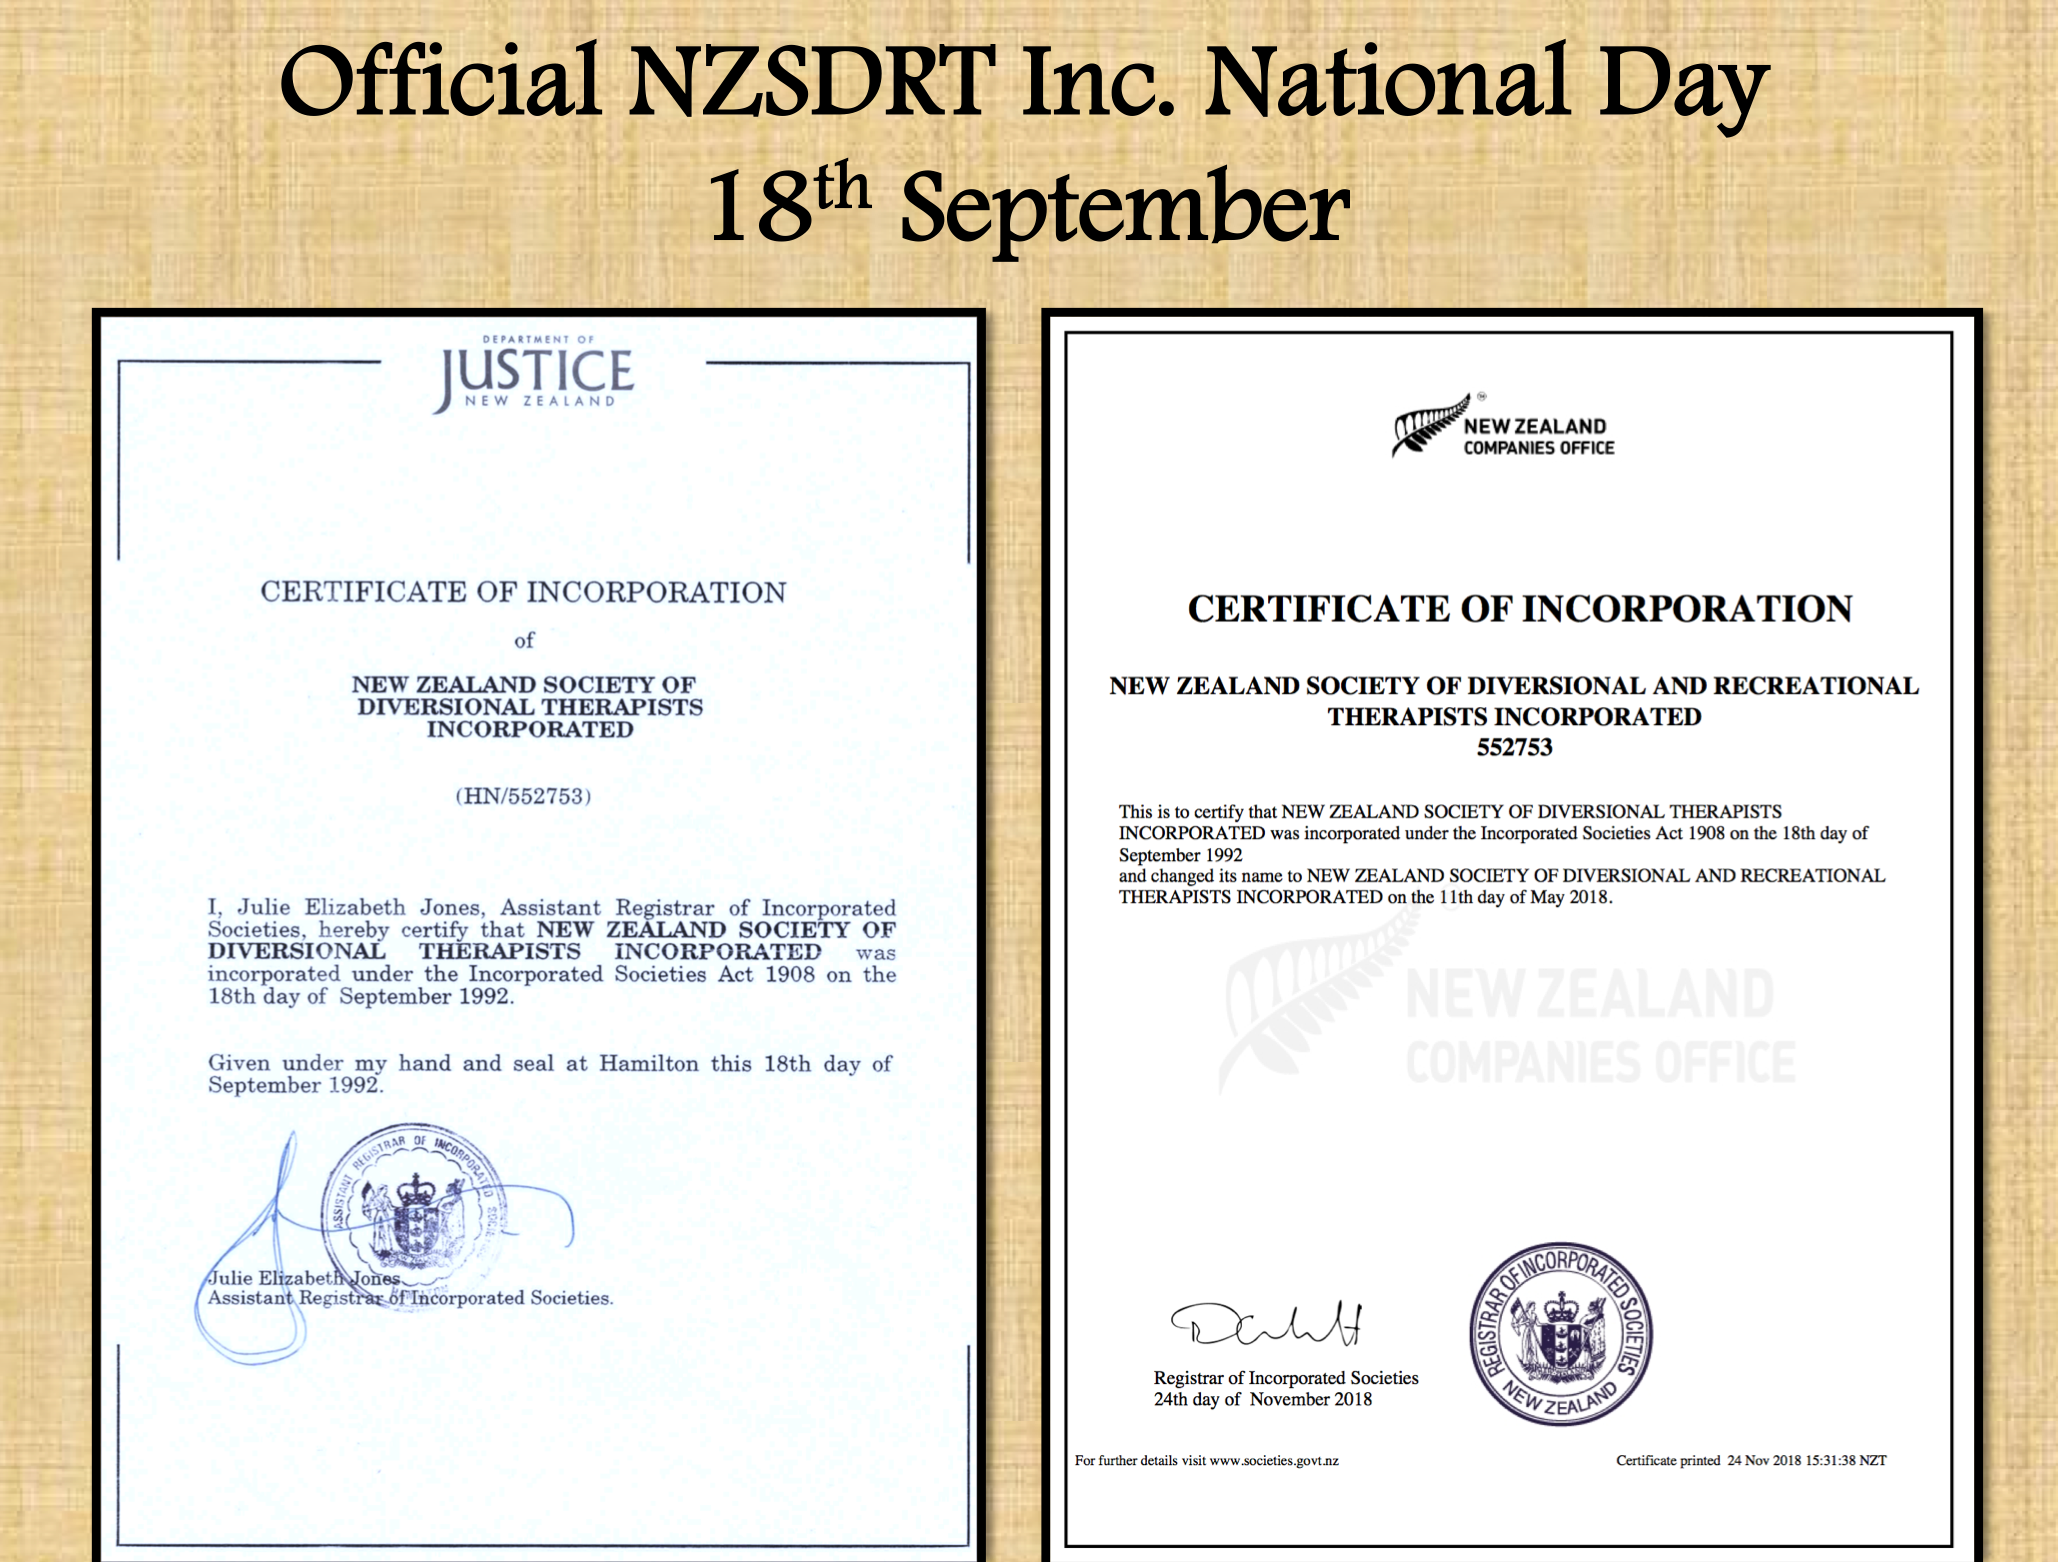 Official NZSDRT Inc. Day